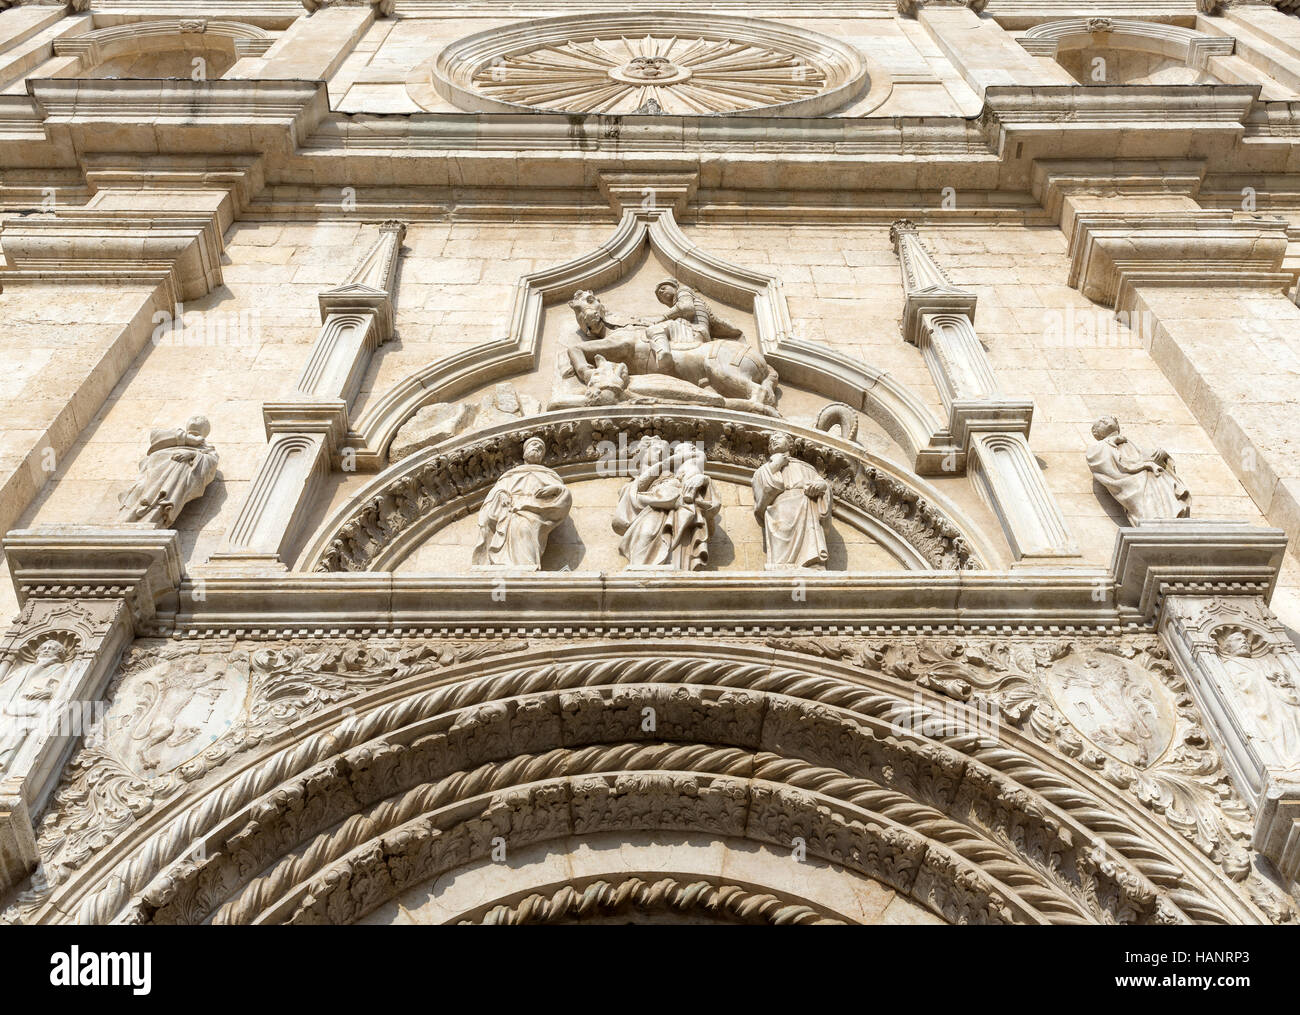 Facade of the Basilica of San Nicola - Tolentino - Italy Stock Photo